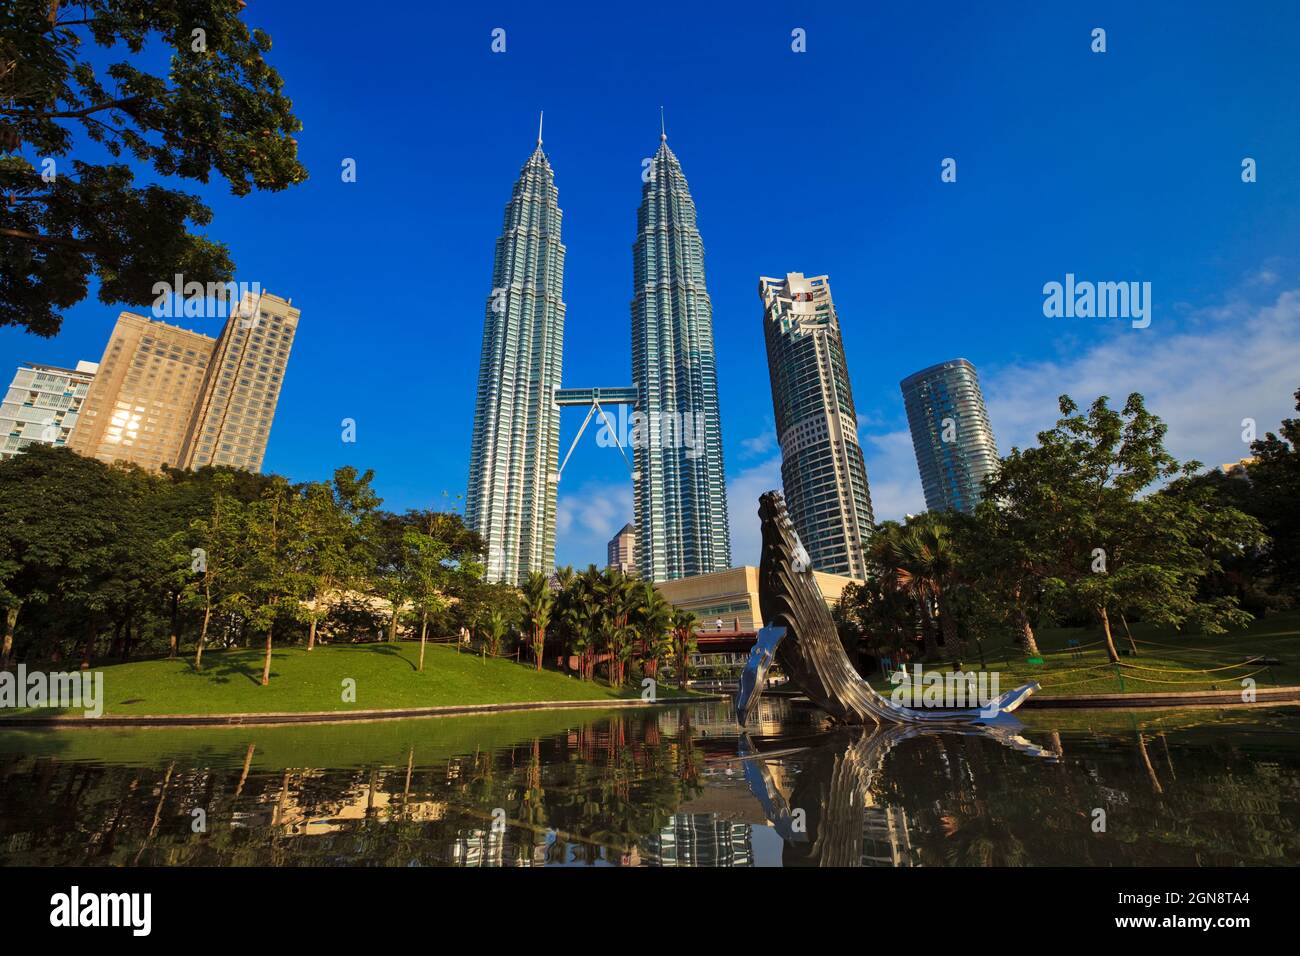 Malaisie, Kuala Lumpur, sculpture sur l'étang et les baleines dans le parc KLCC avec Petronas Towers en arrière-plan Banque D'Images